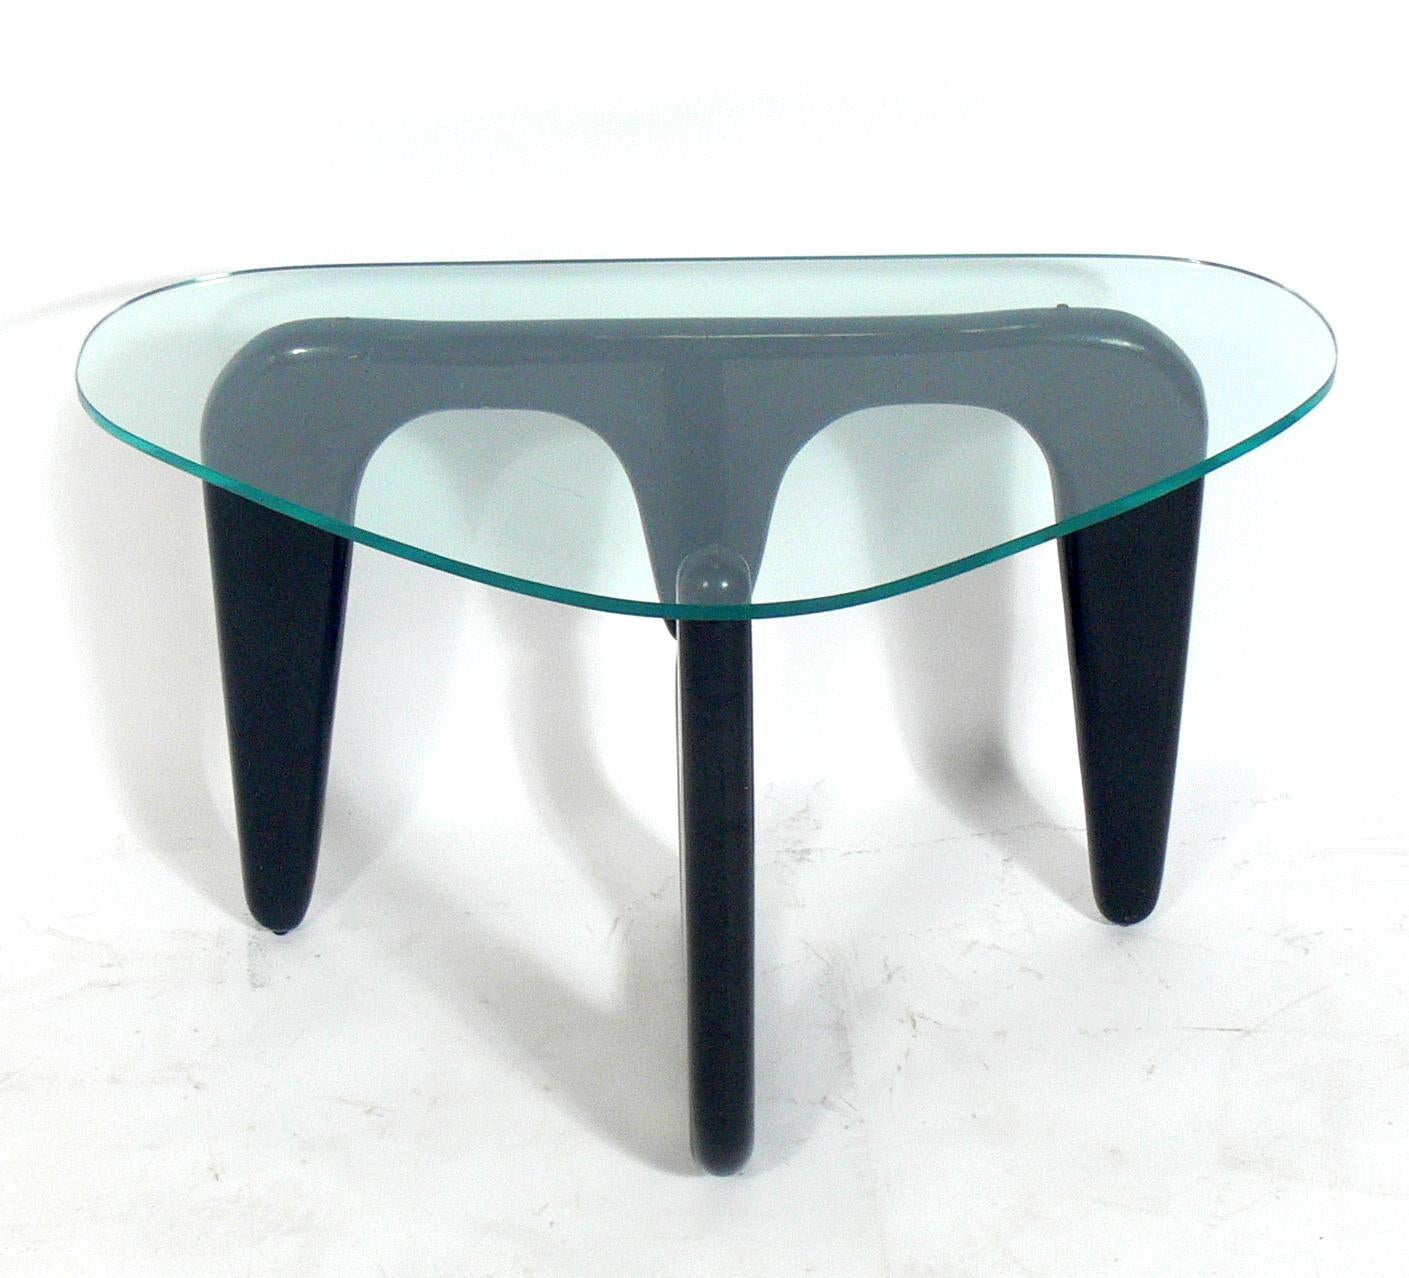 Tisch im Stil von Isamu Noguchi, amerikanisch, ca. 1950er Jahre. Er hat eine vielseitige Größe und kann als Beistelltisch, zwischen zwei Stühlen oder sogar als niedriger Konsolentisch verwendet werden.